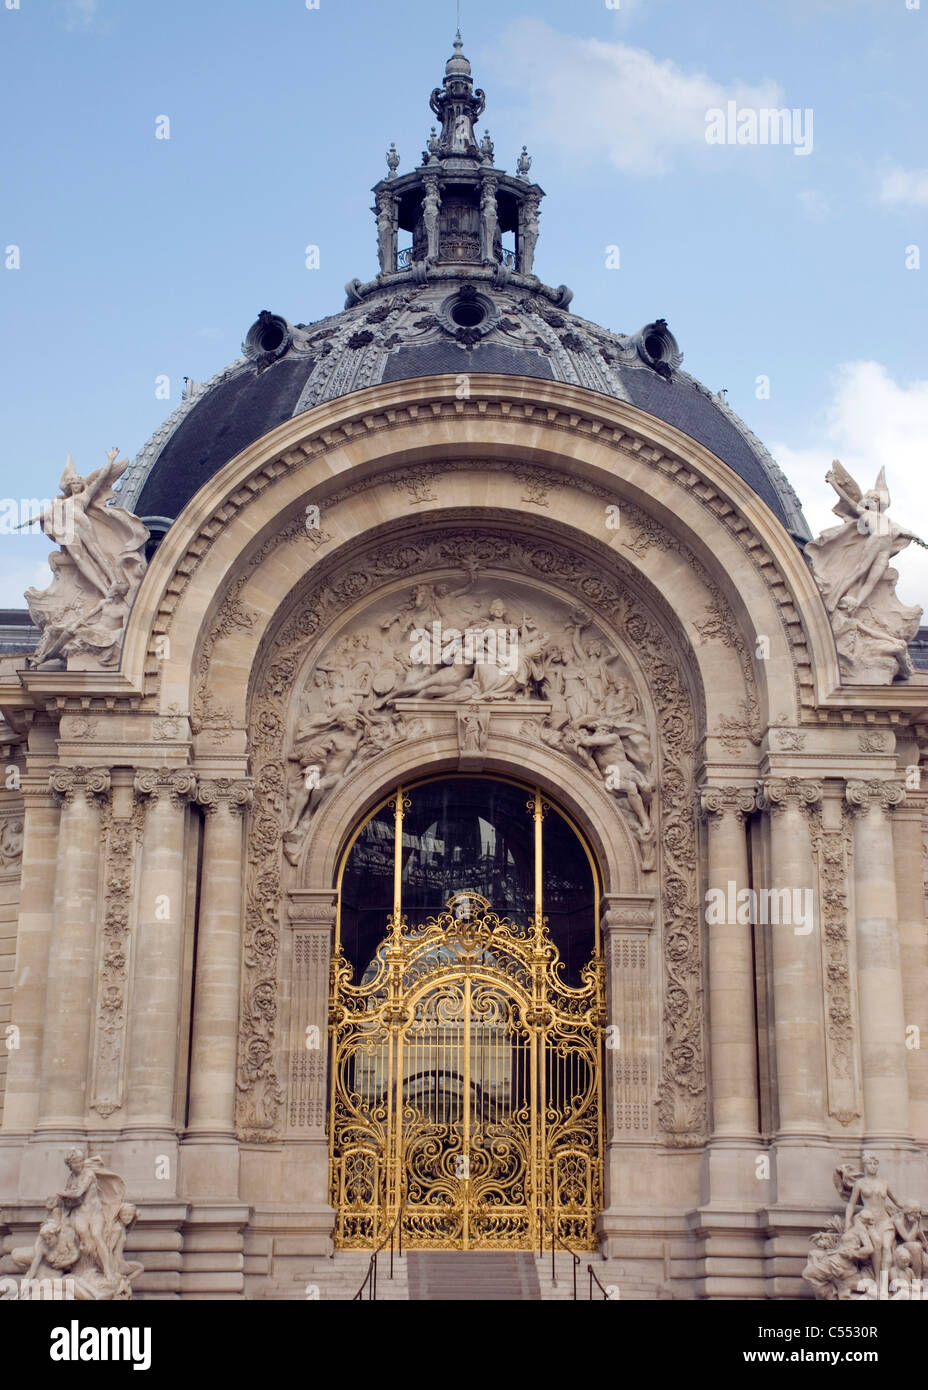 Facade of a museum, Petit Palais, Paris, France Stock Photo